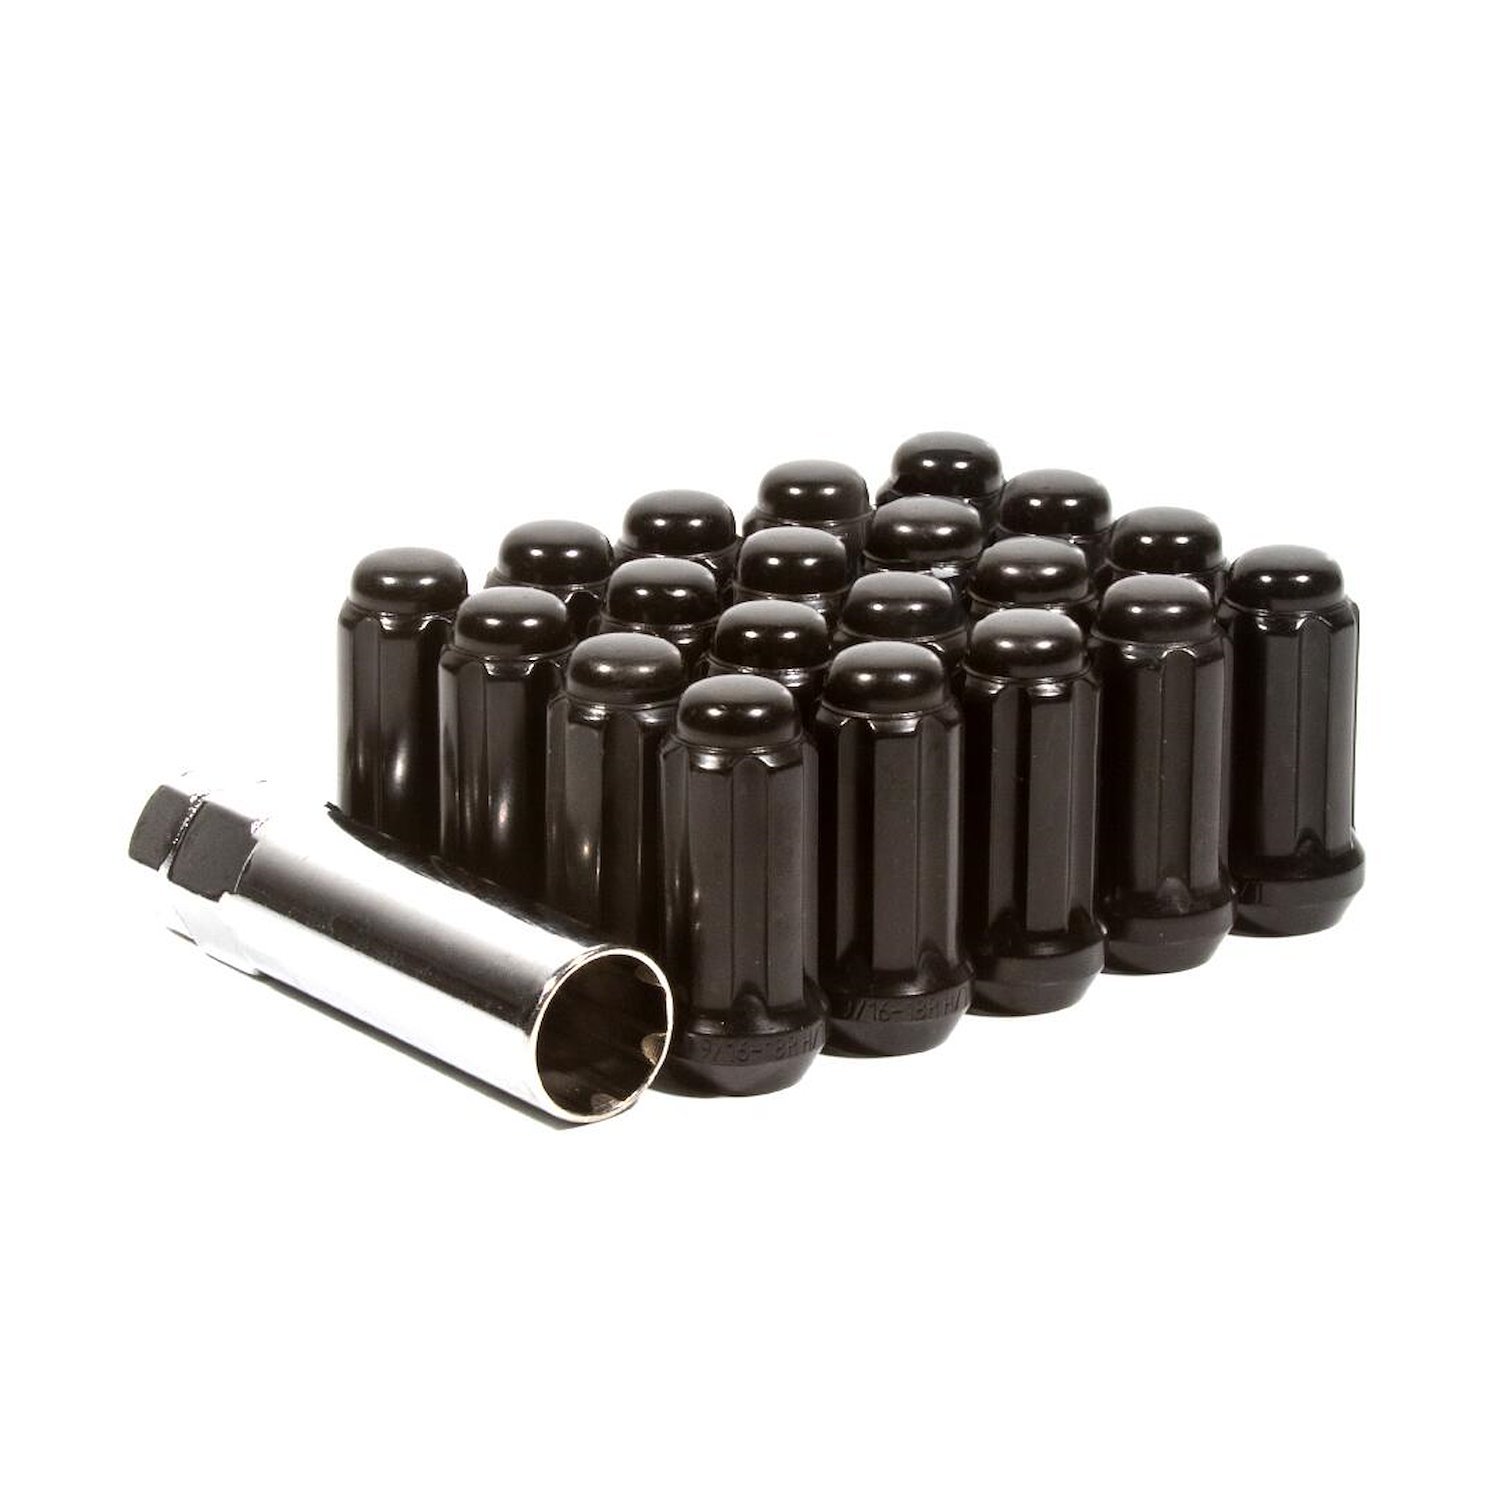 LK-W56015SEB Lug Kit, Extended Thread Spline, M12X1.5, 6 Lug Kit, Black, 24 Nuts